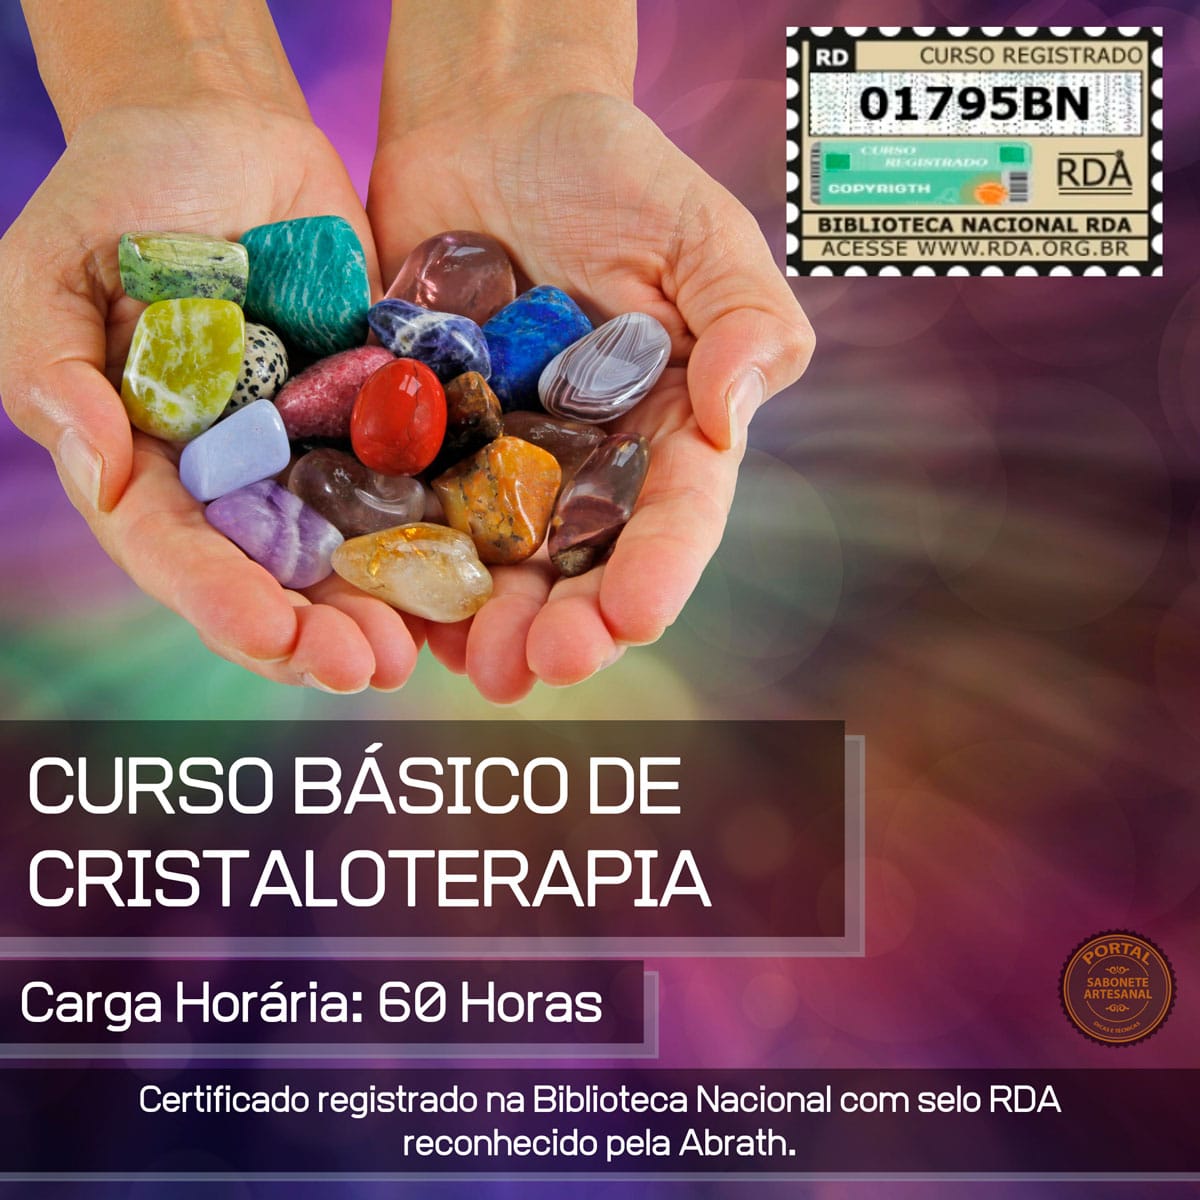 Curso Básico de Cristaloterapia - Terapia com cristais